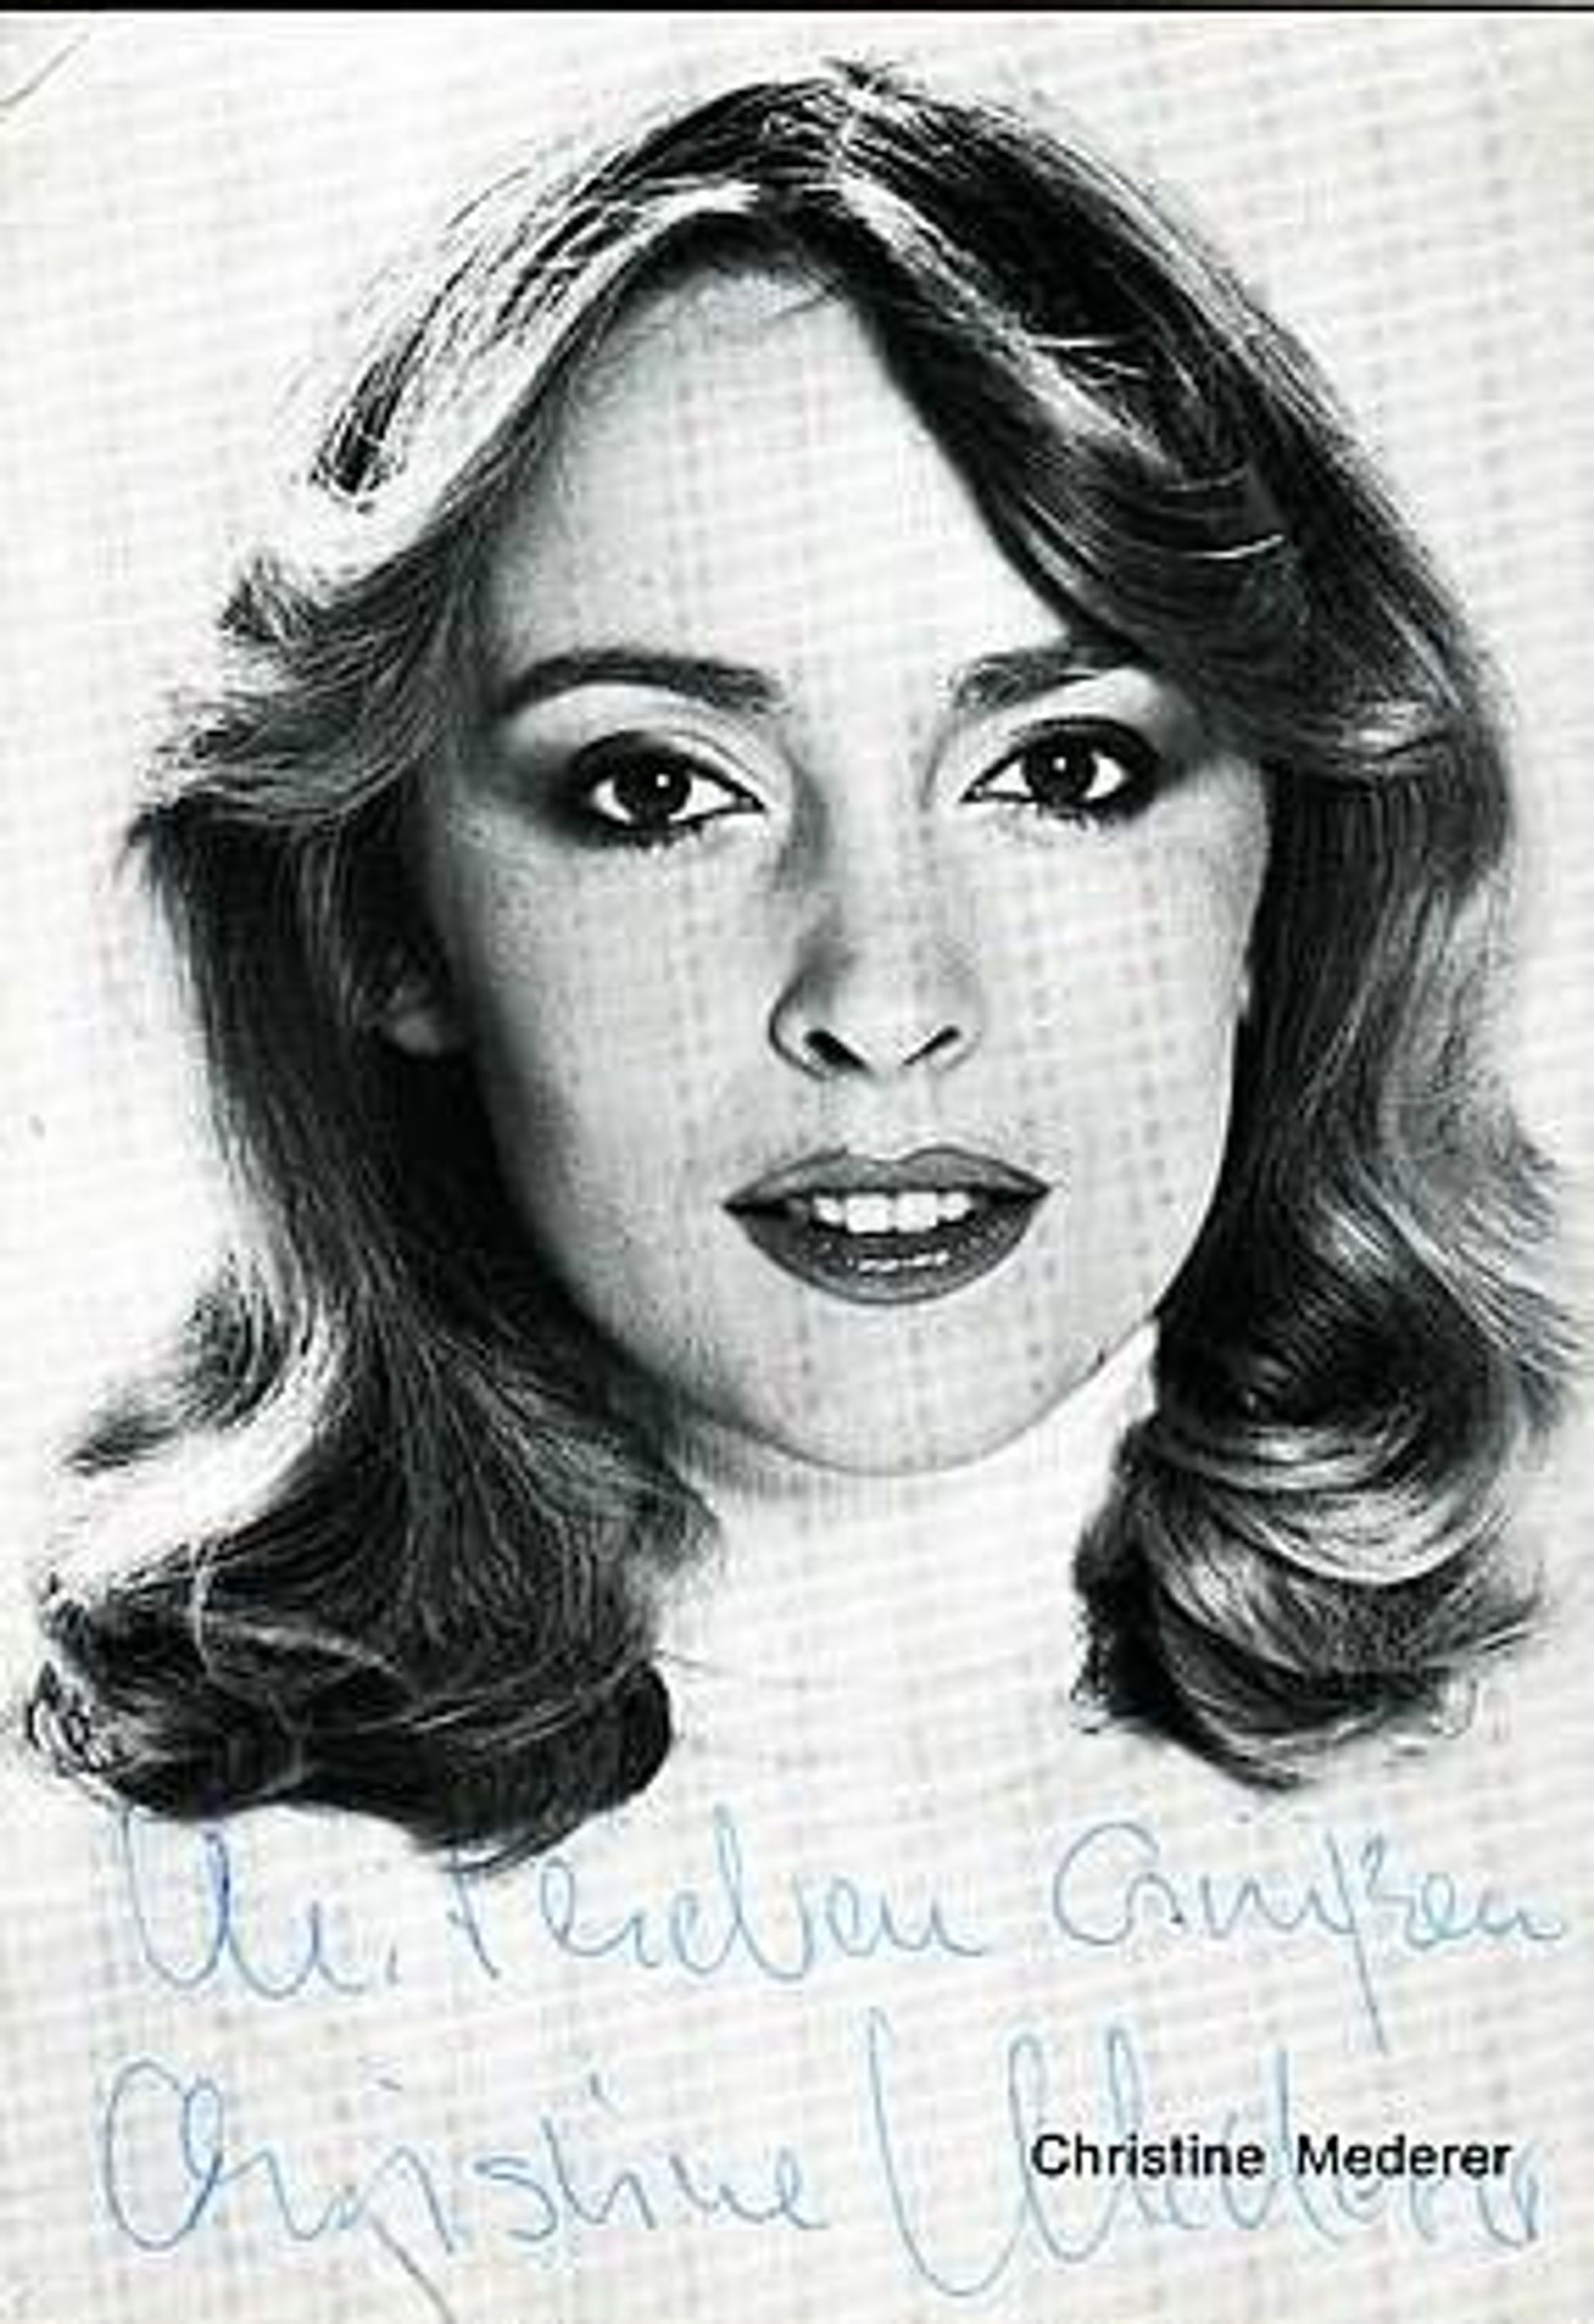 Christine Mederer - Autogrammbildkarte mit original Signatur gebraucht ...